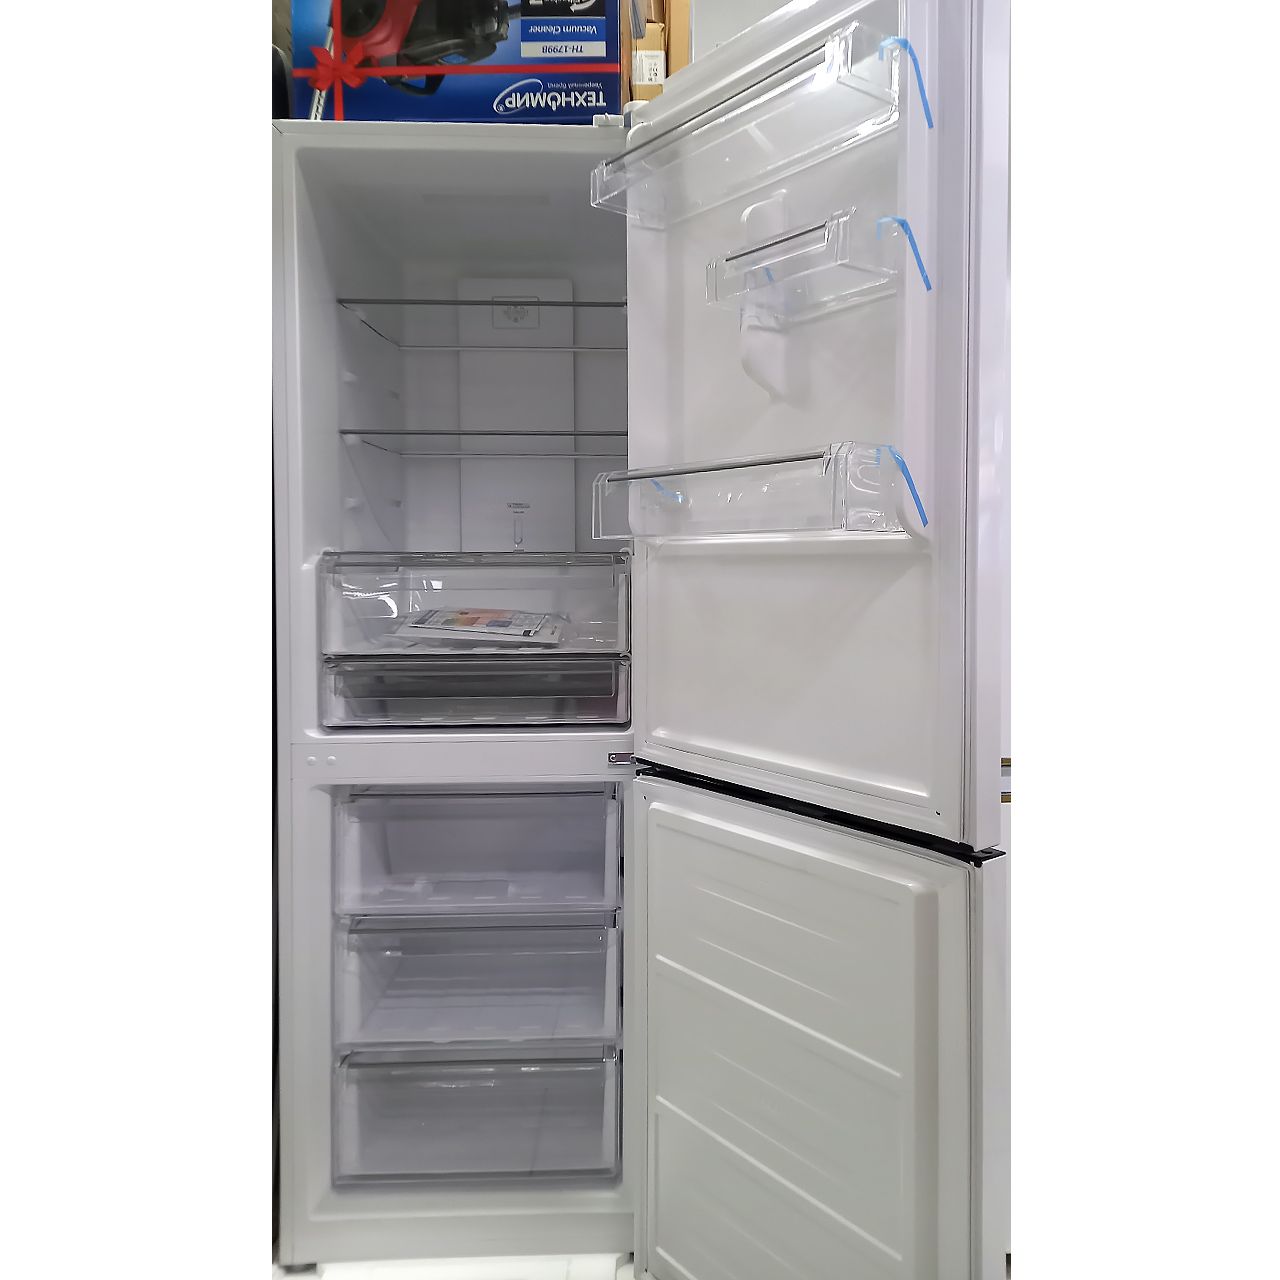 Холодильник двухкамерный Snowcap 315 литров